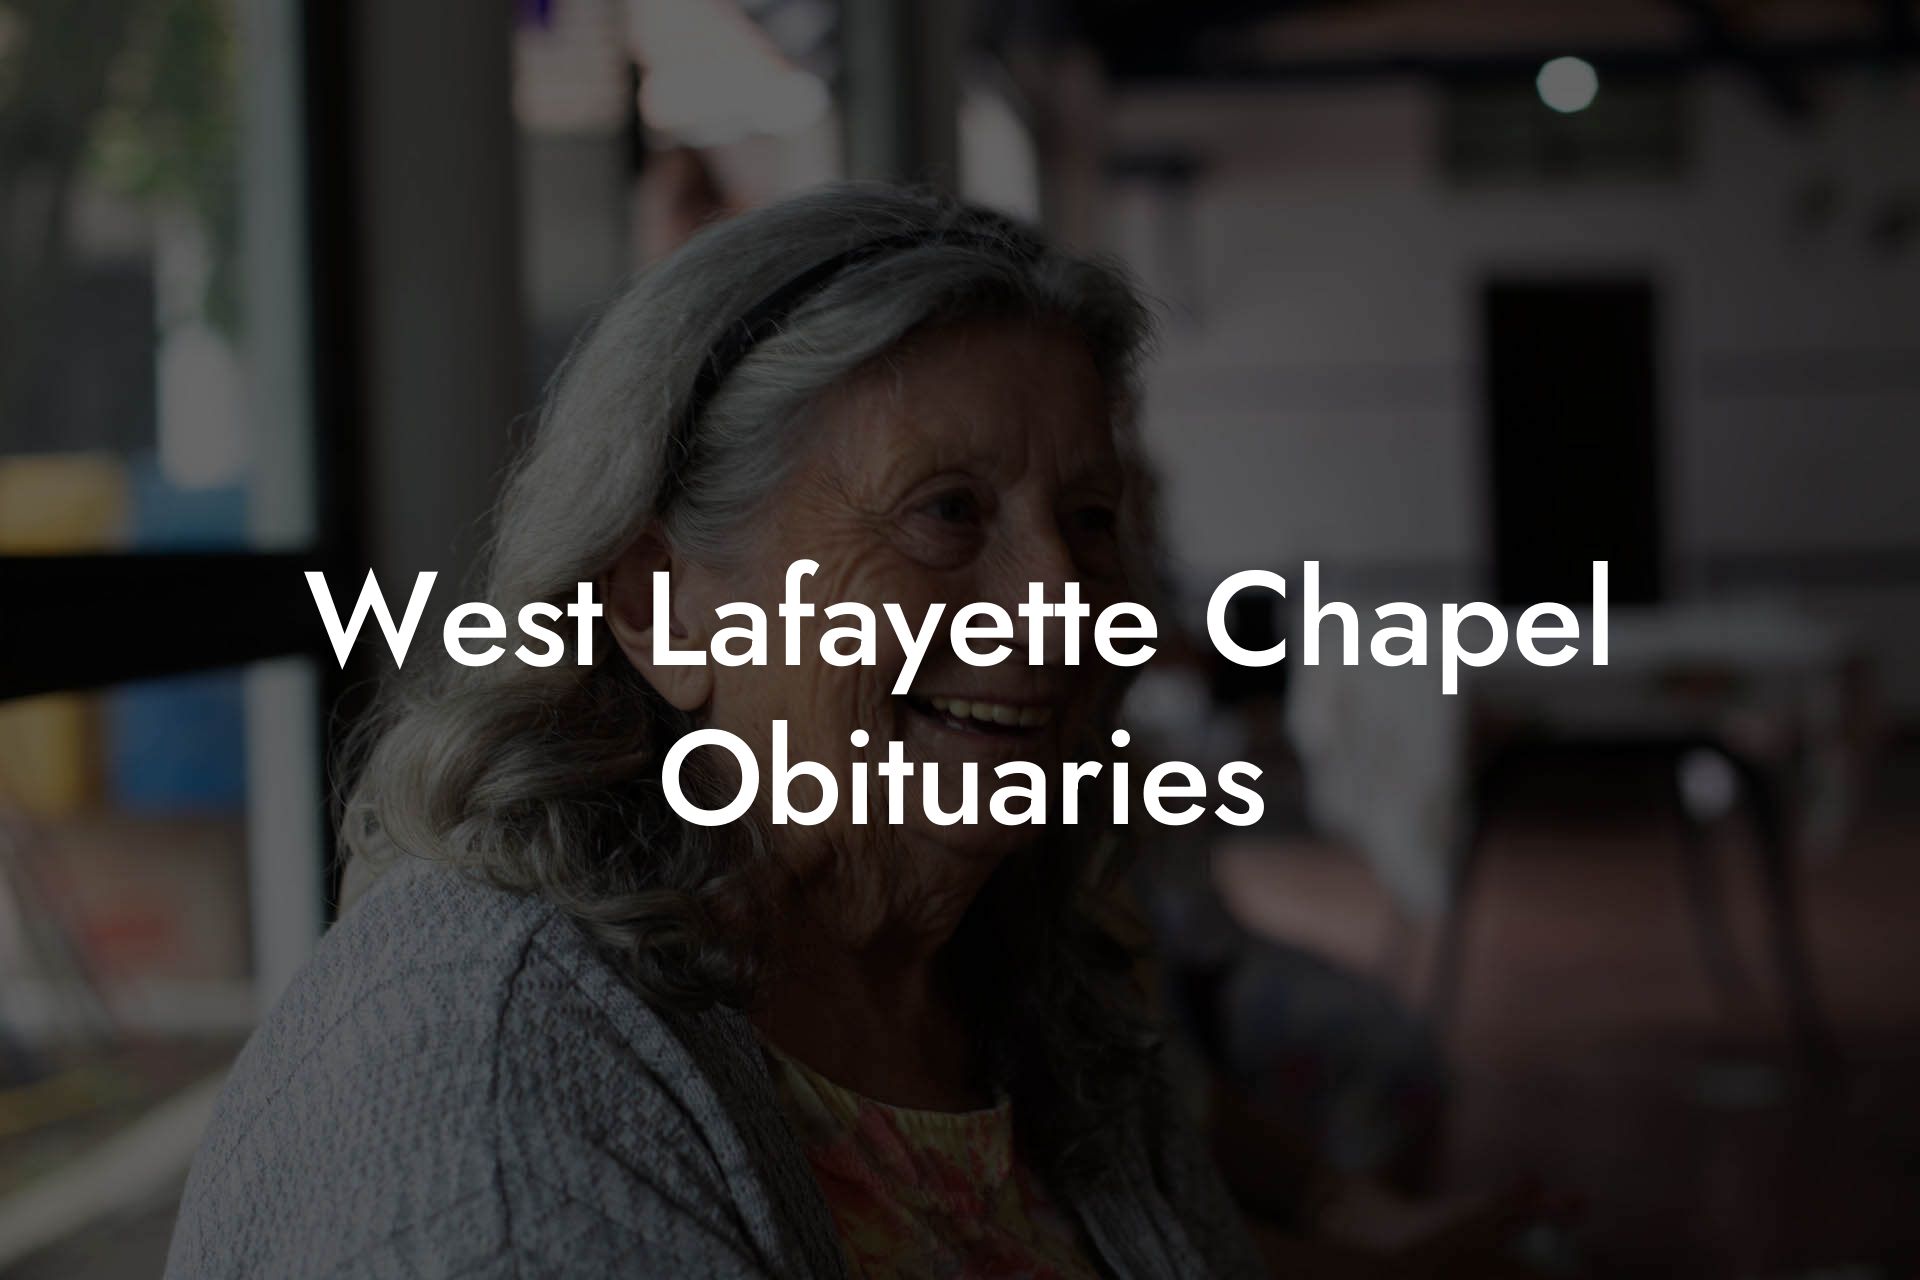 West Lafayette Chapel Obituaries